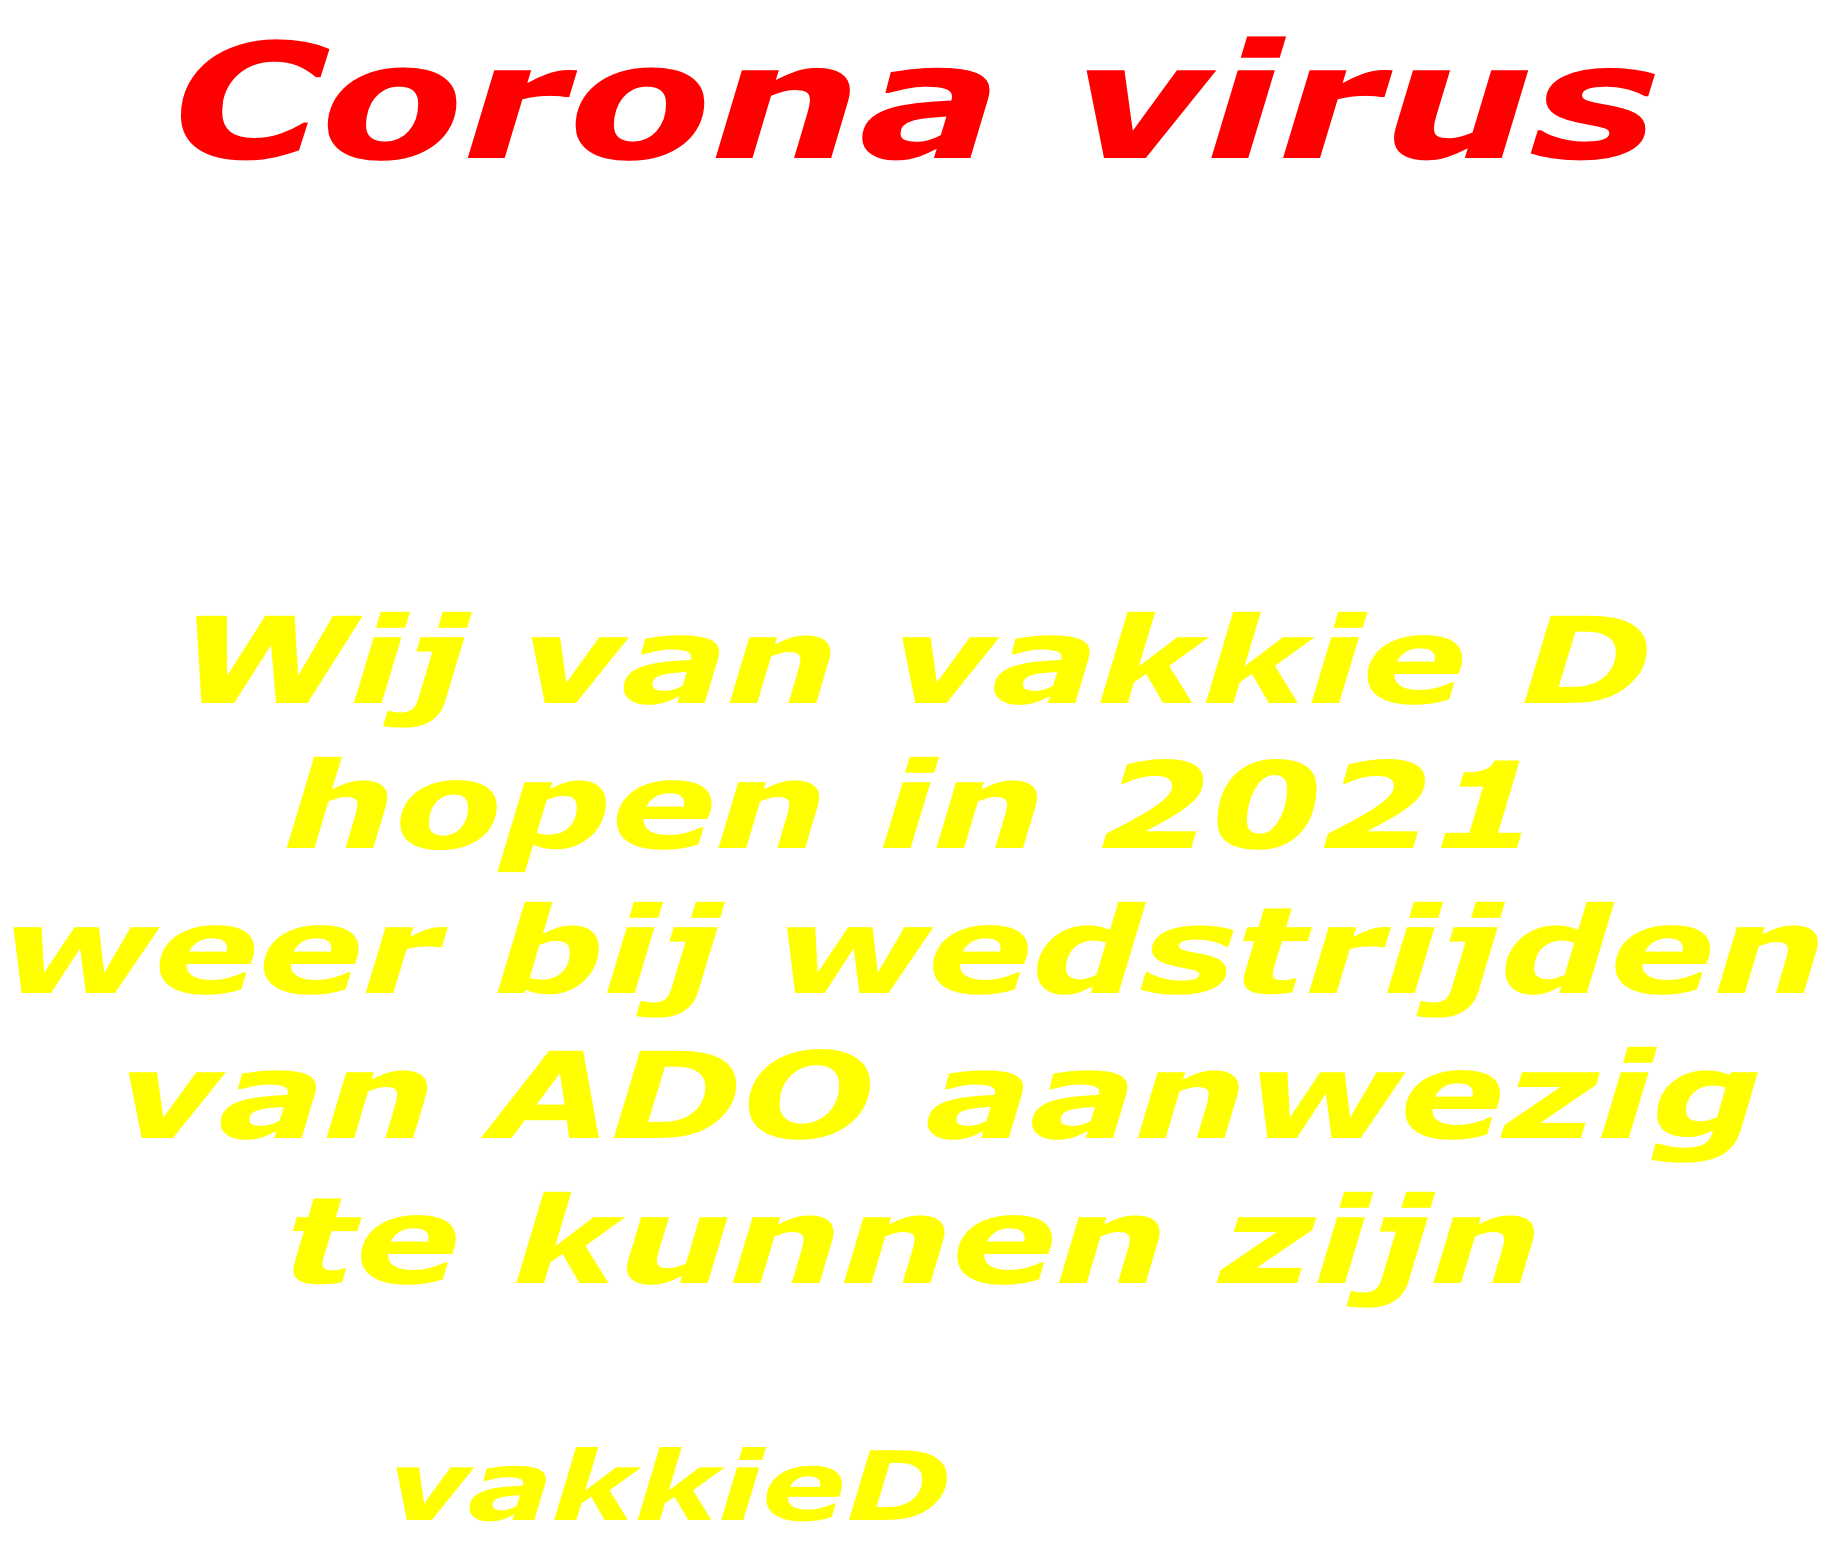 Corona virus  Ivm het corana virus is de voetbal  competitie 2020-2021  tot nu zonder supporters. Op de eerste 2 wedstrijden na met beperkt publiek.  Wij van vakkie D hopen in 2021 weer bij wedstrijden  van ADO aanwezig te kunnen zijn           vakkieD